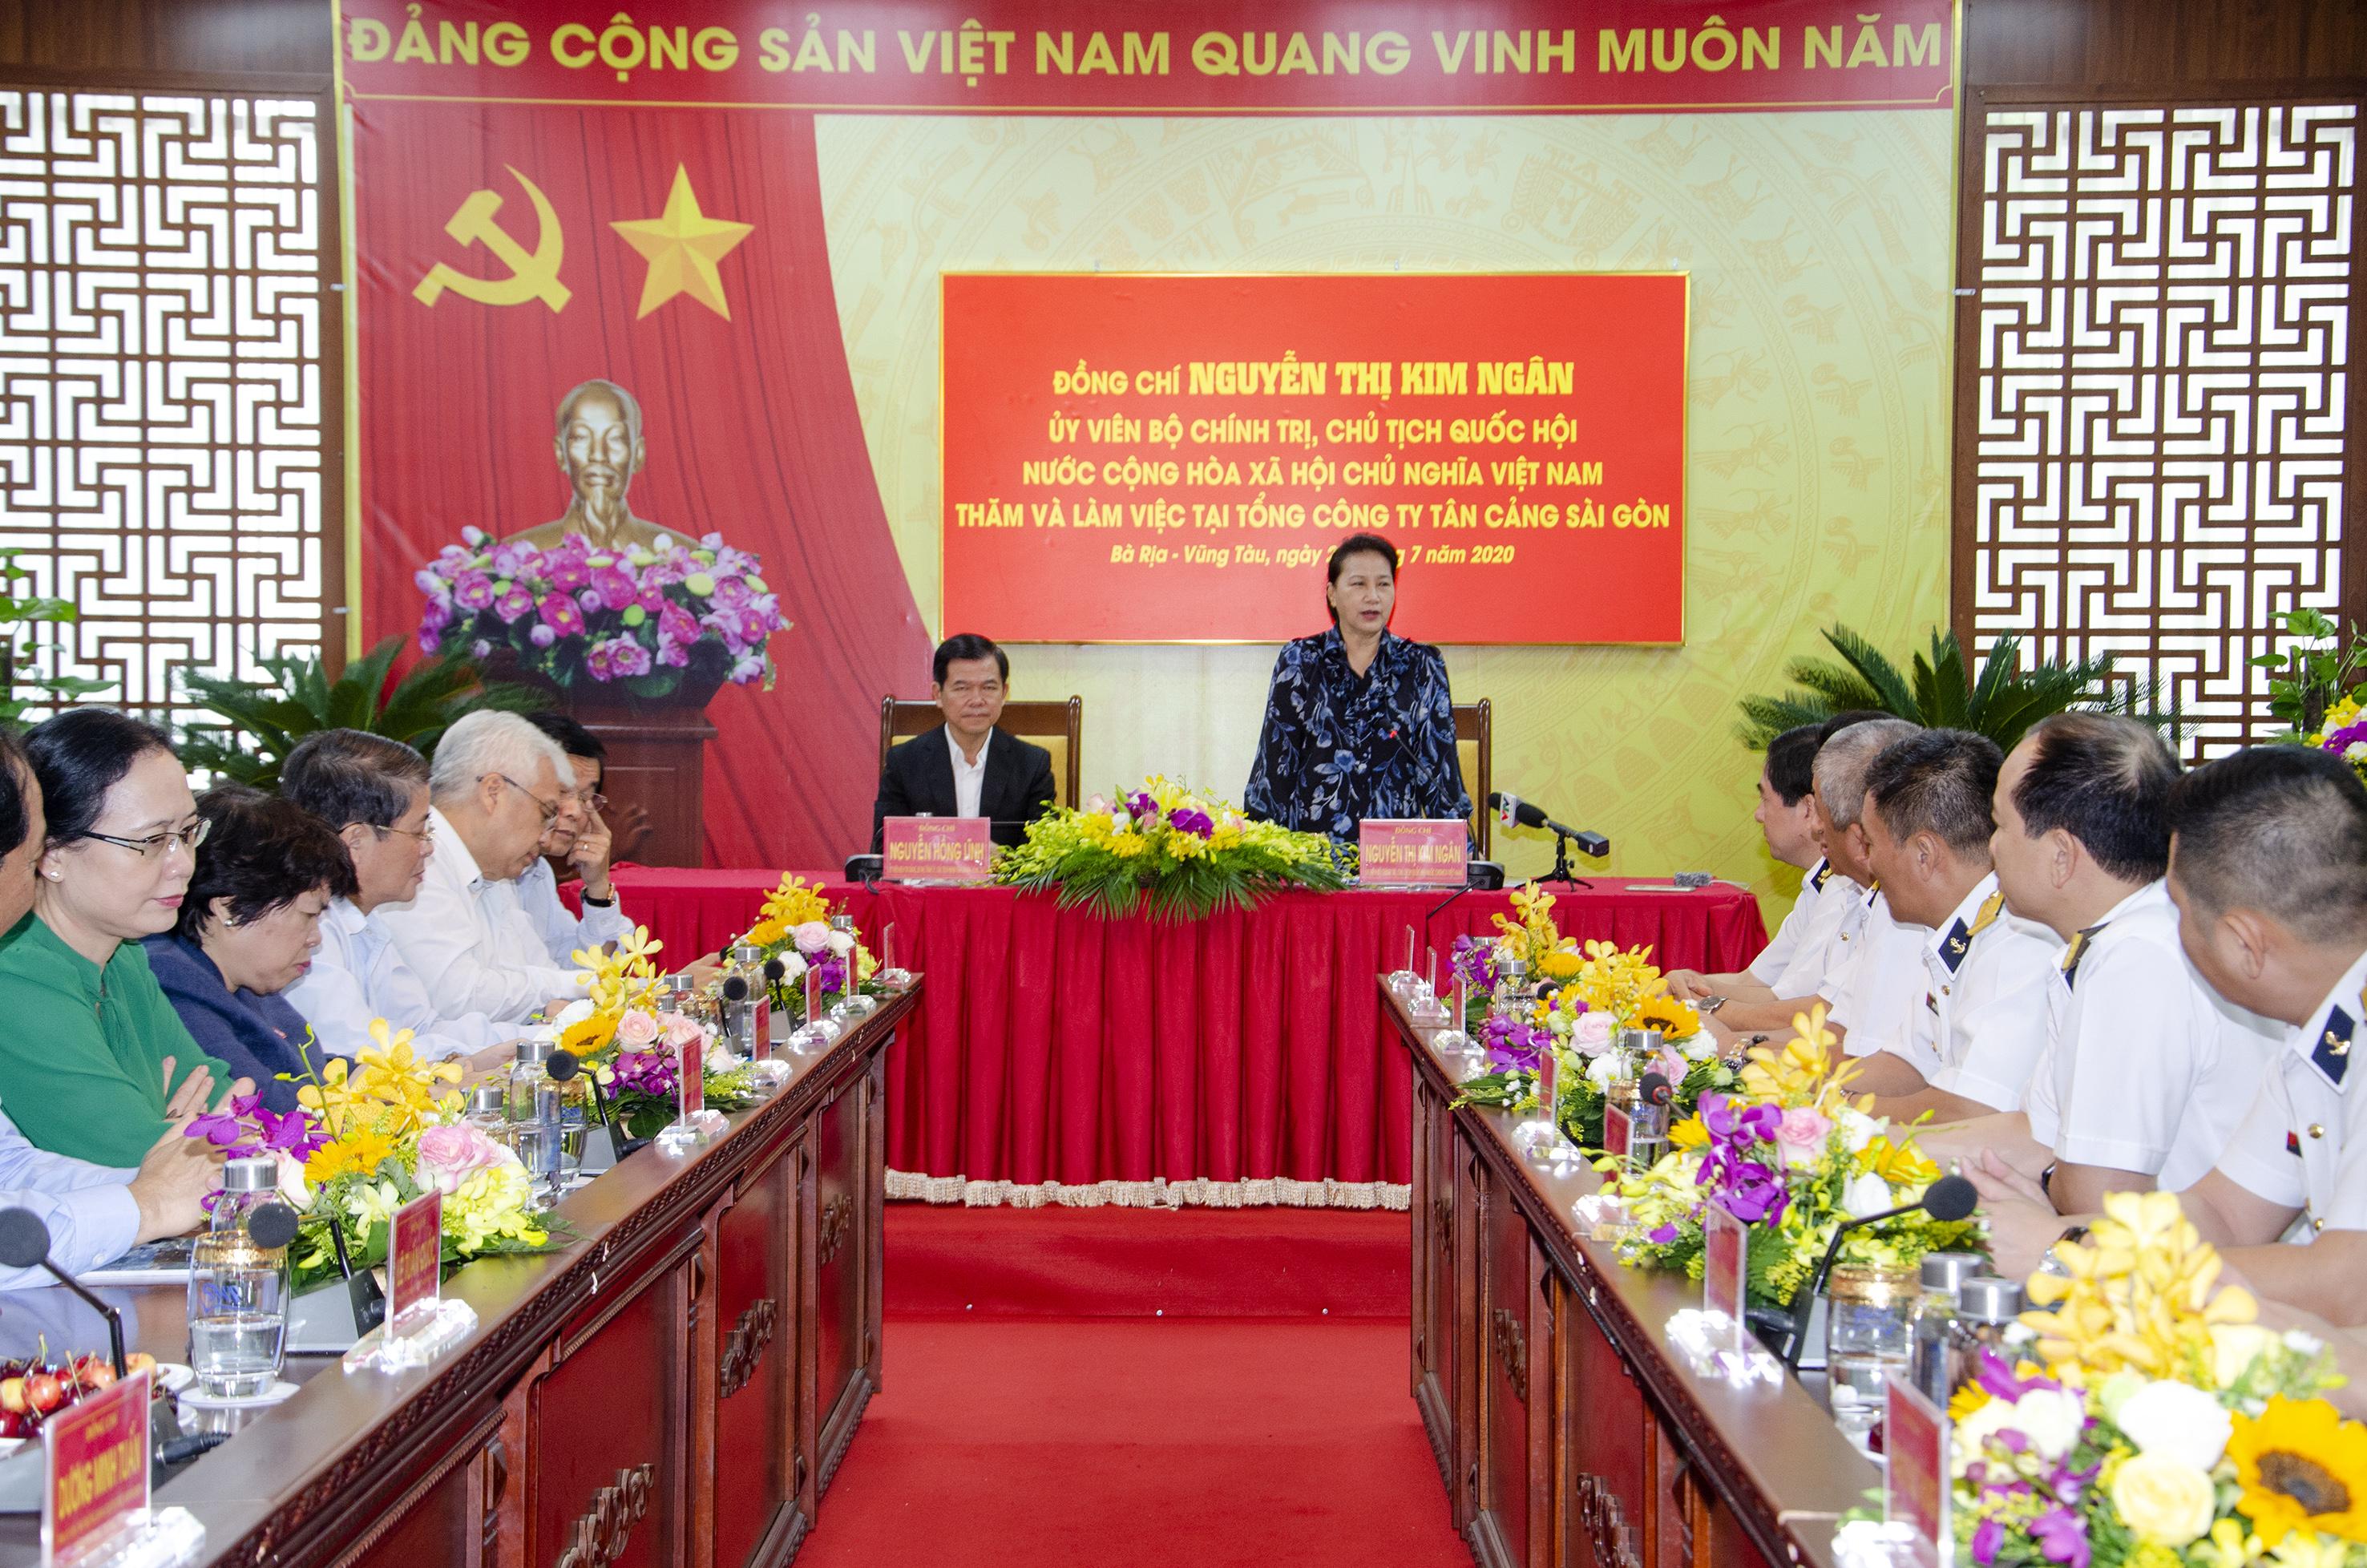 Chủ tịch Quốc hội Nguyễn Thị Kim Ngân phát biểu tại buổi làm việc với Tổng Công ty Tân Cảng Sài Gòn